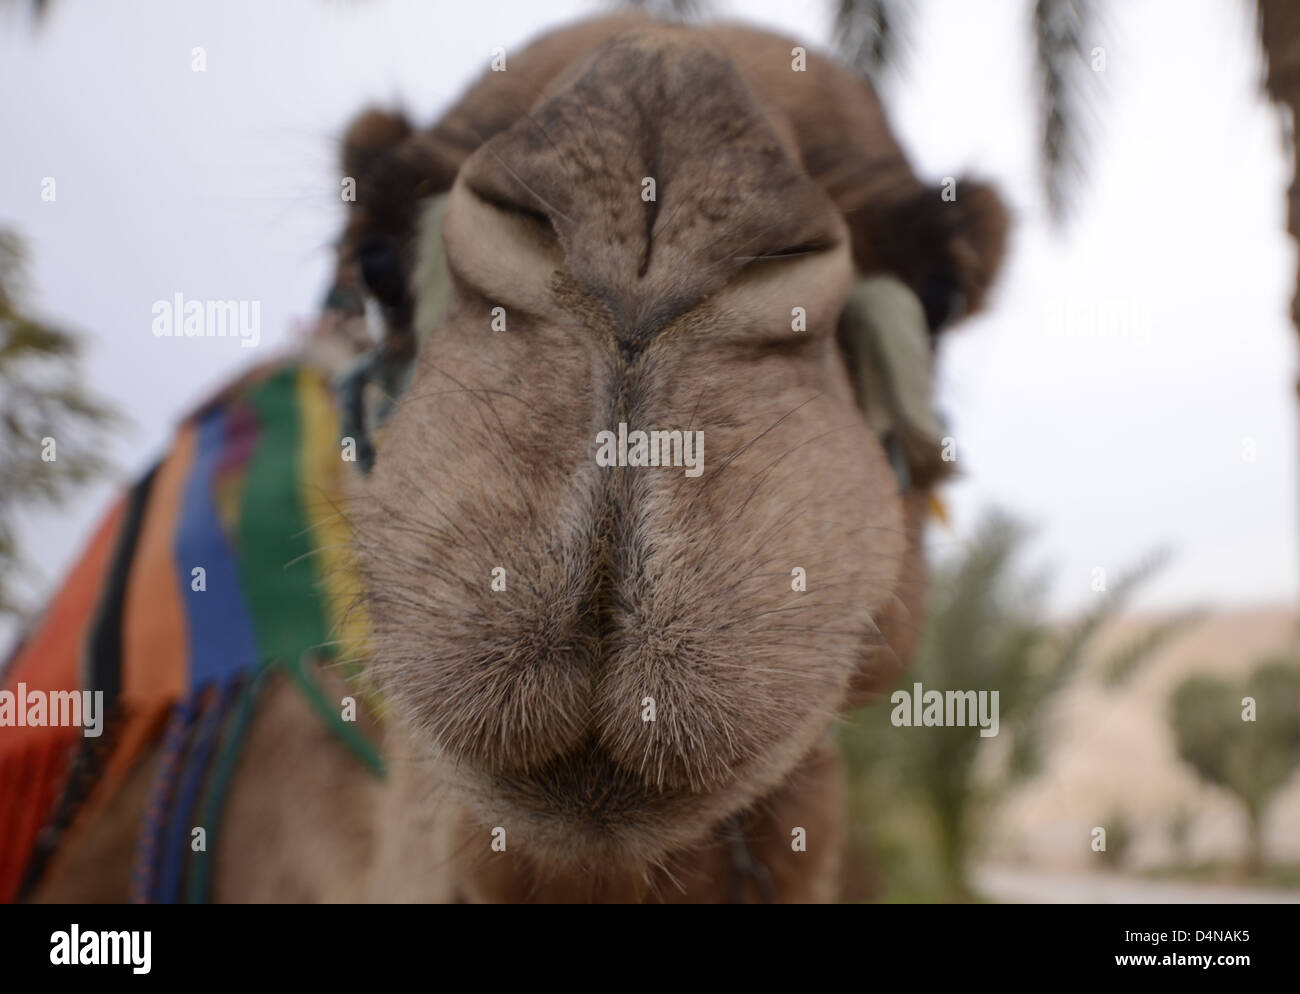 Israël, désert du Néguev, gros plan d'un chameau arabe (Camelus dromedarius) Banque D'Images